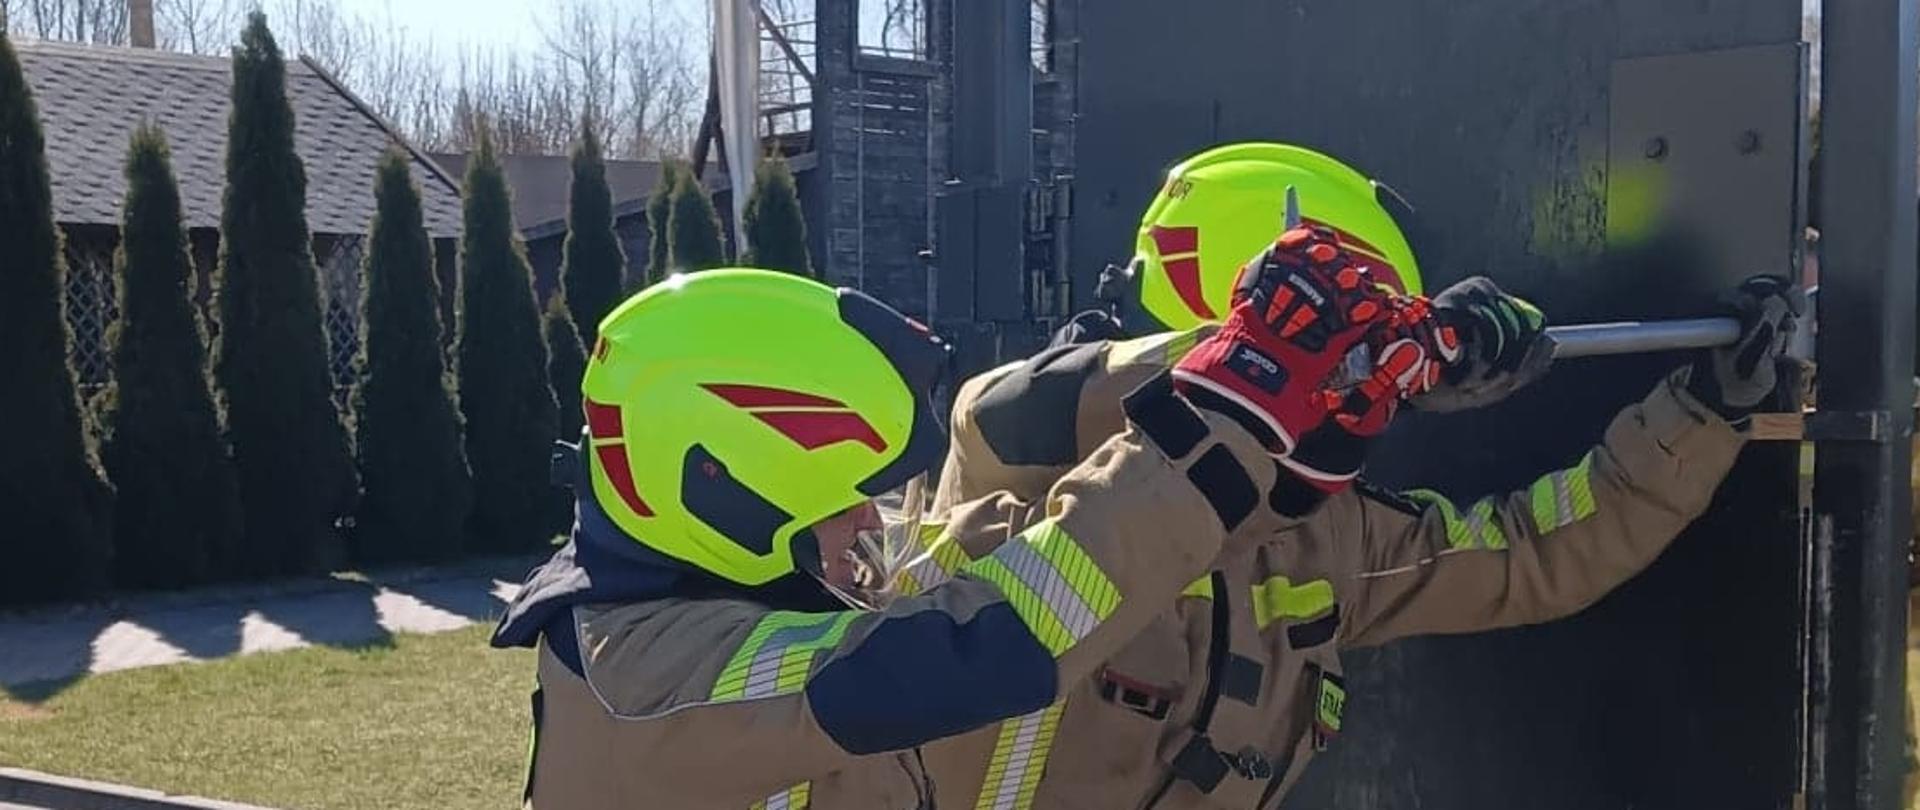 Na zdjęciu widzimy dwóch strażaków podczas próby siłowego otwarcia drzwi z użyciem sprzętu burzącego.